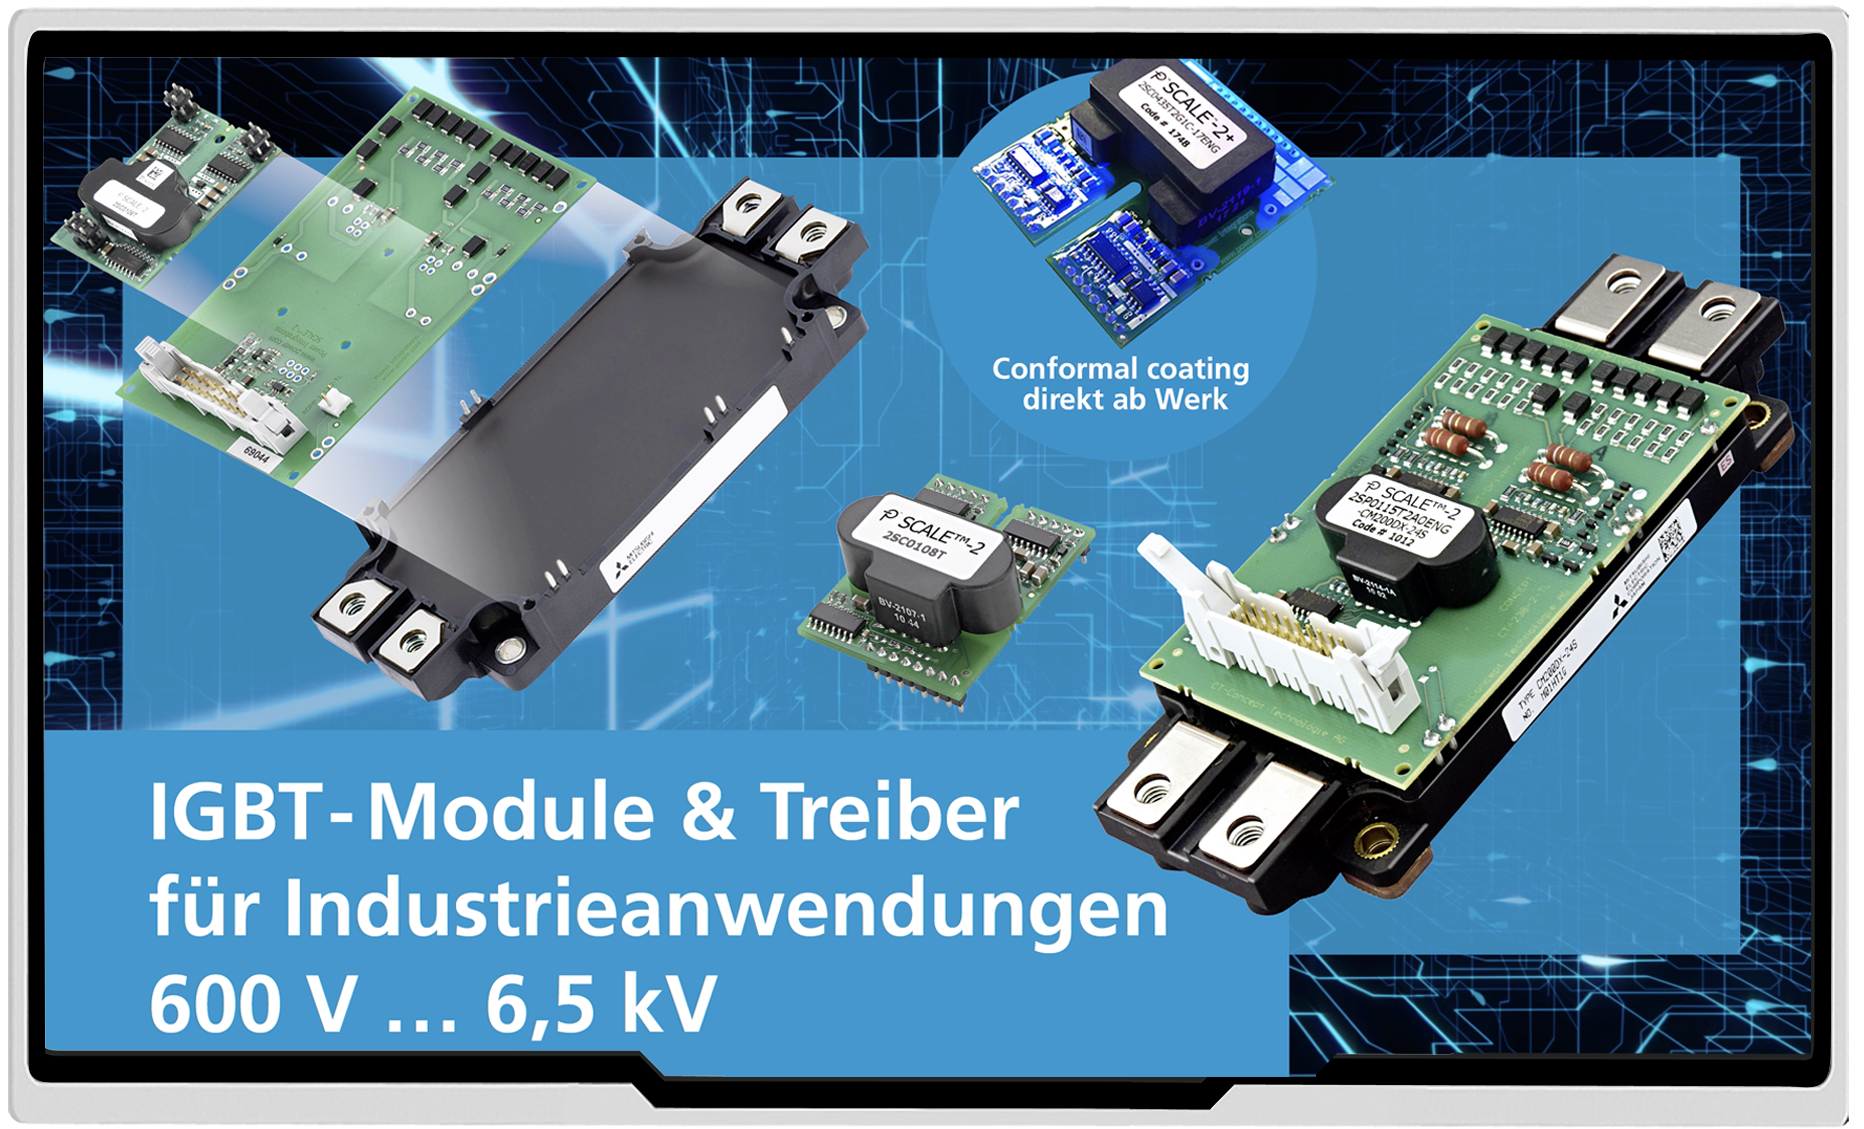 IGBT-Module & Treiber für Industrieanwendungen 600 V ... 6,5 kV